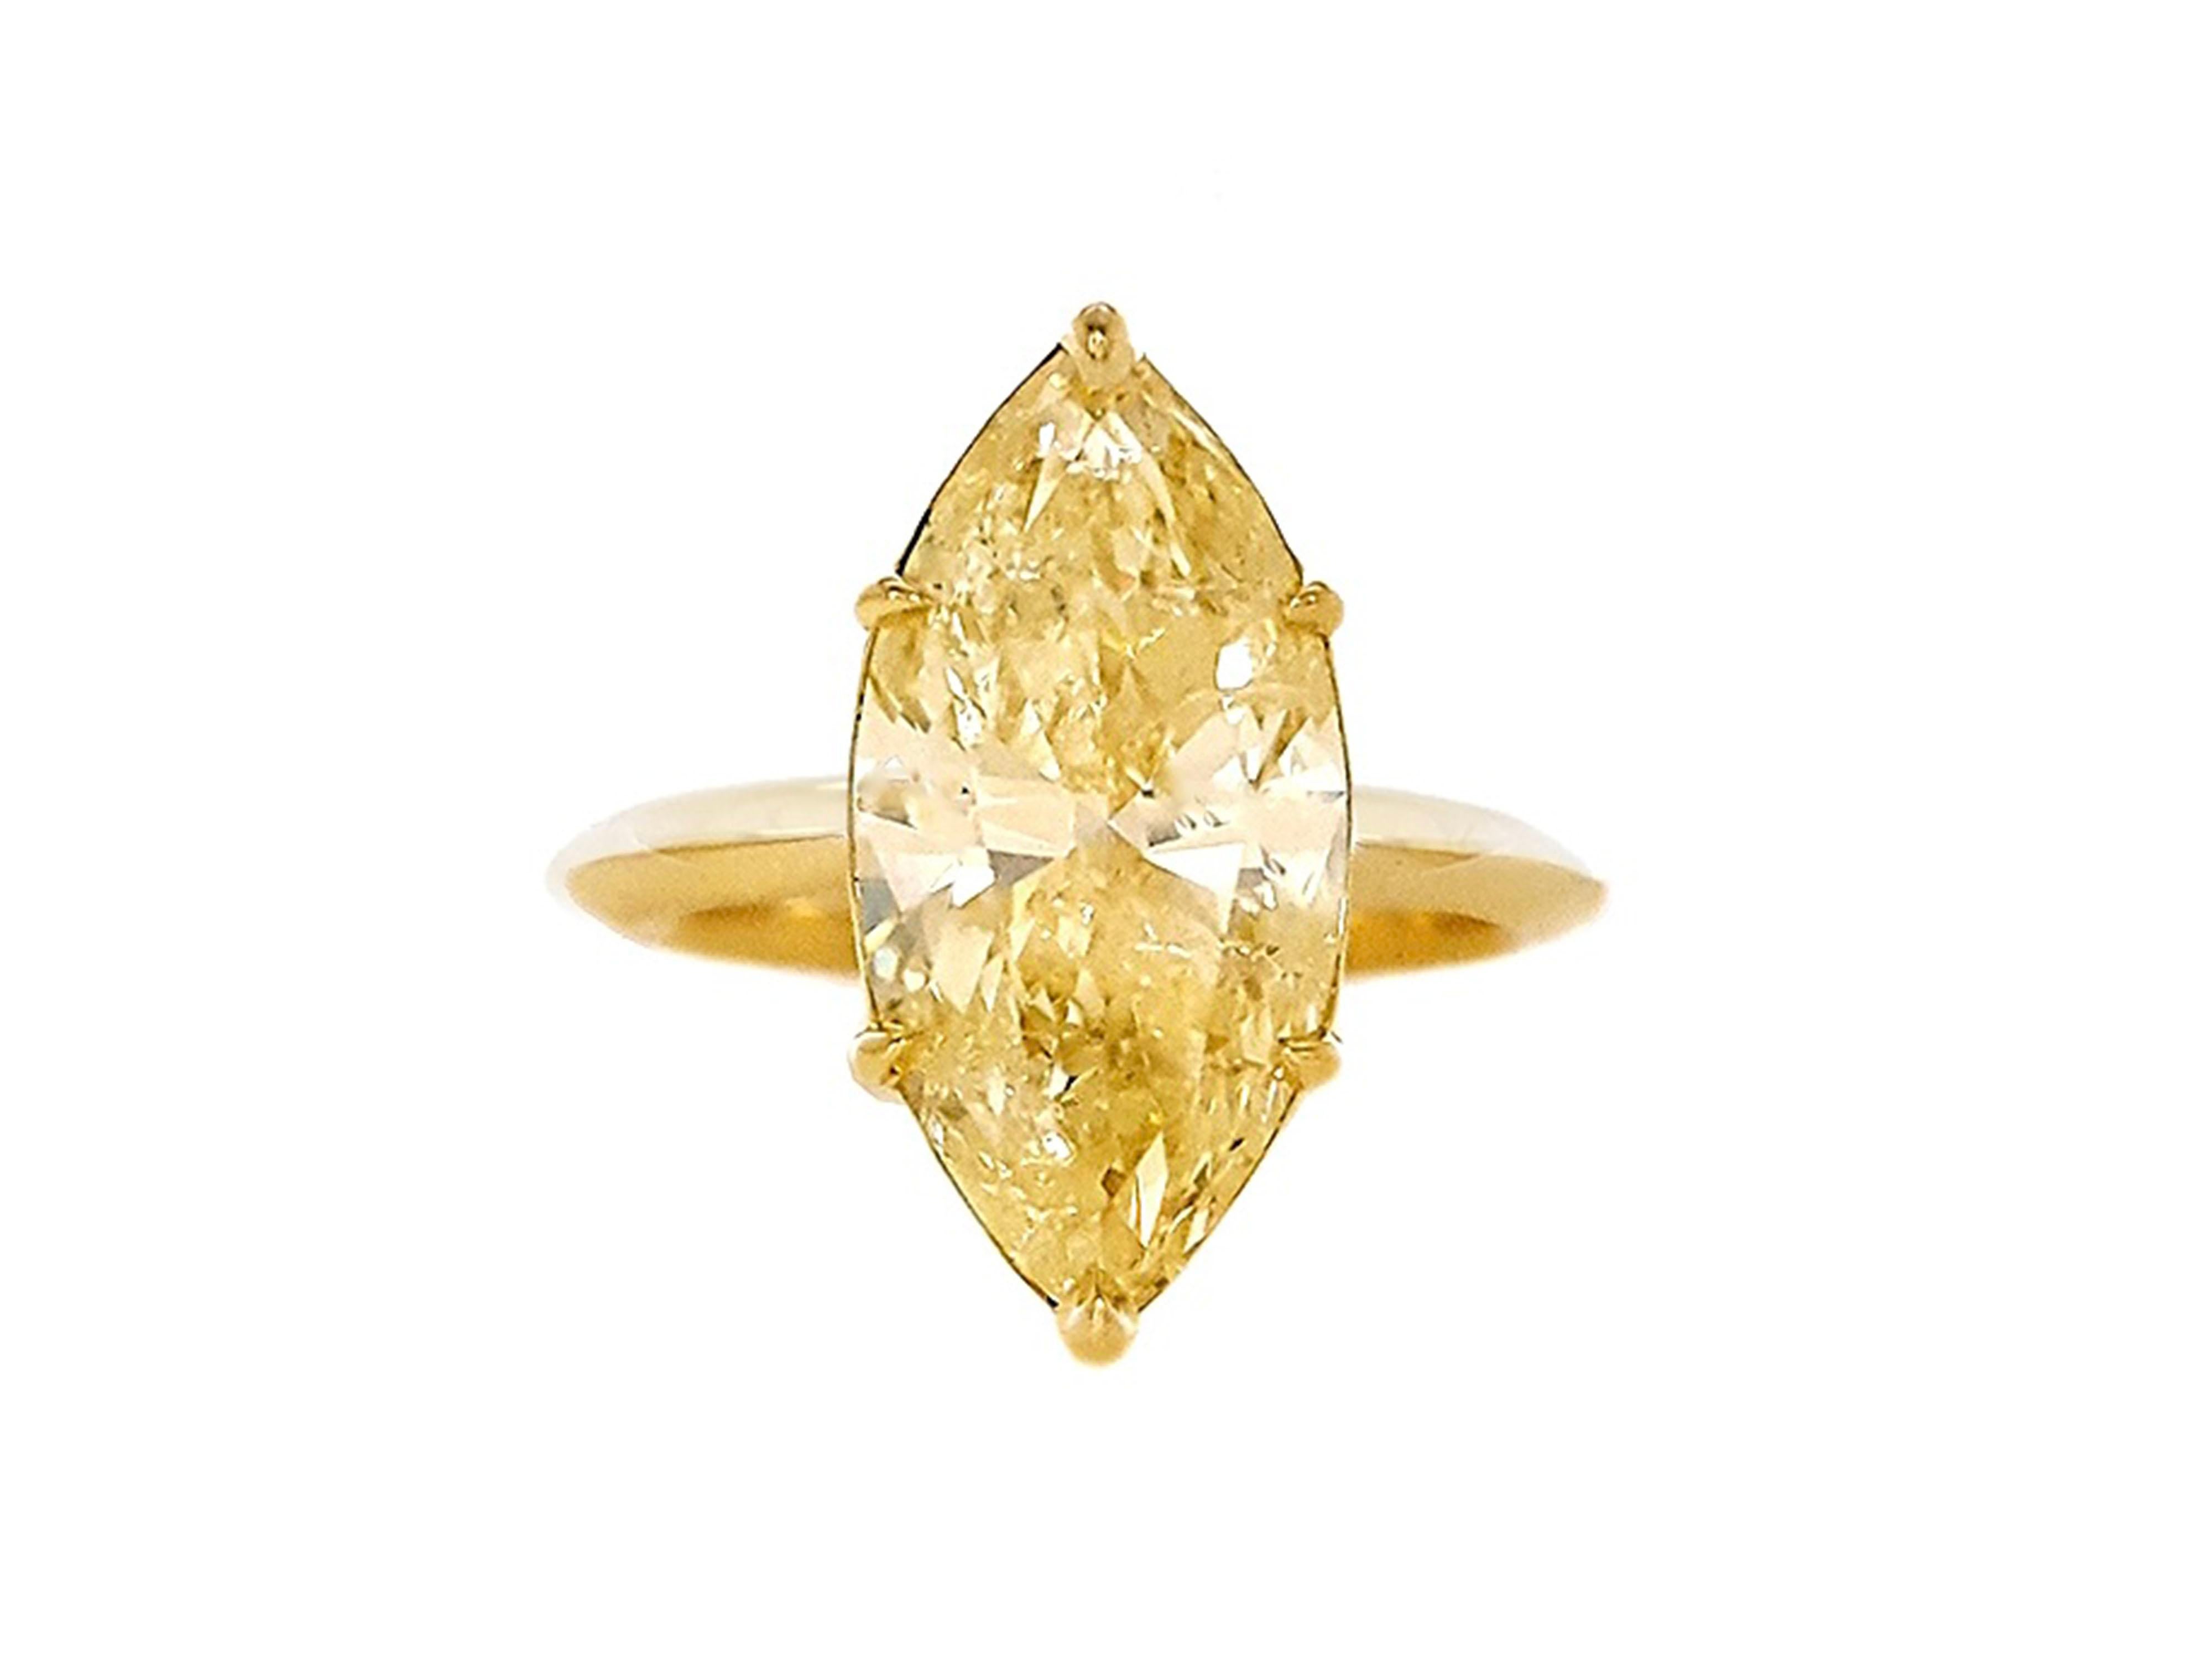 Ein absolut atemberaubender Verlobungsring mit einem 5,18 Karat Fancy Yellow Diamant im Marquee-Schliff, der bei jeder Bewegung funkelt und glänzt. Set in 18K Gold Verlobungsring von GIA zertifiziert. Die handgefertigte Fassung verleiht ihm einen